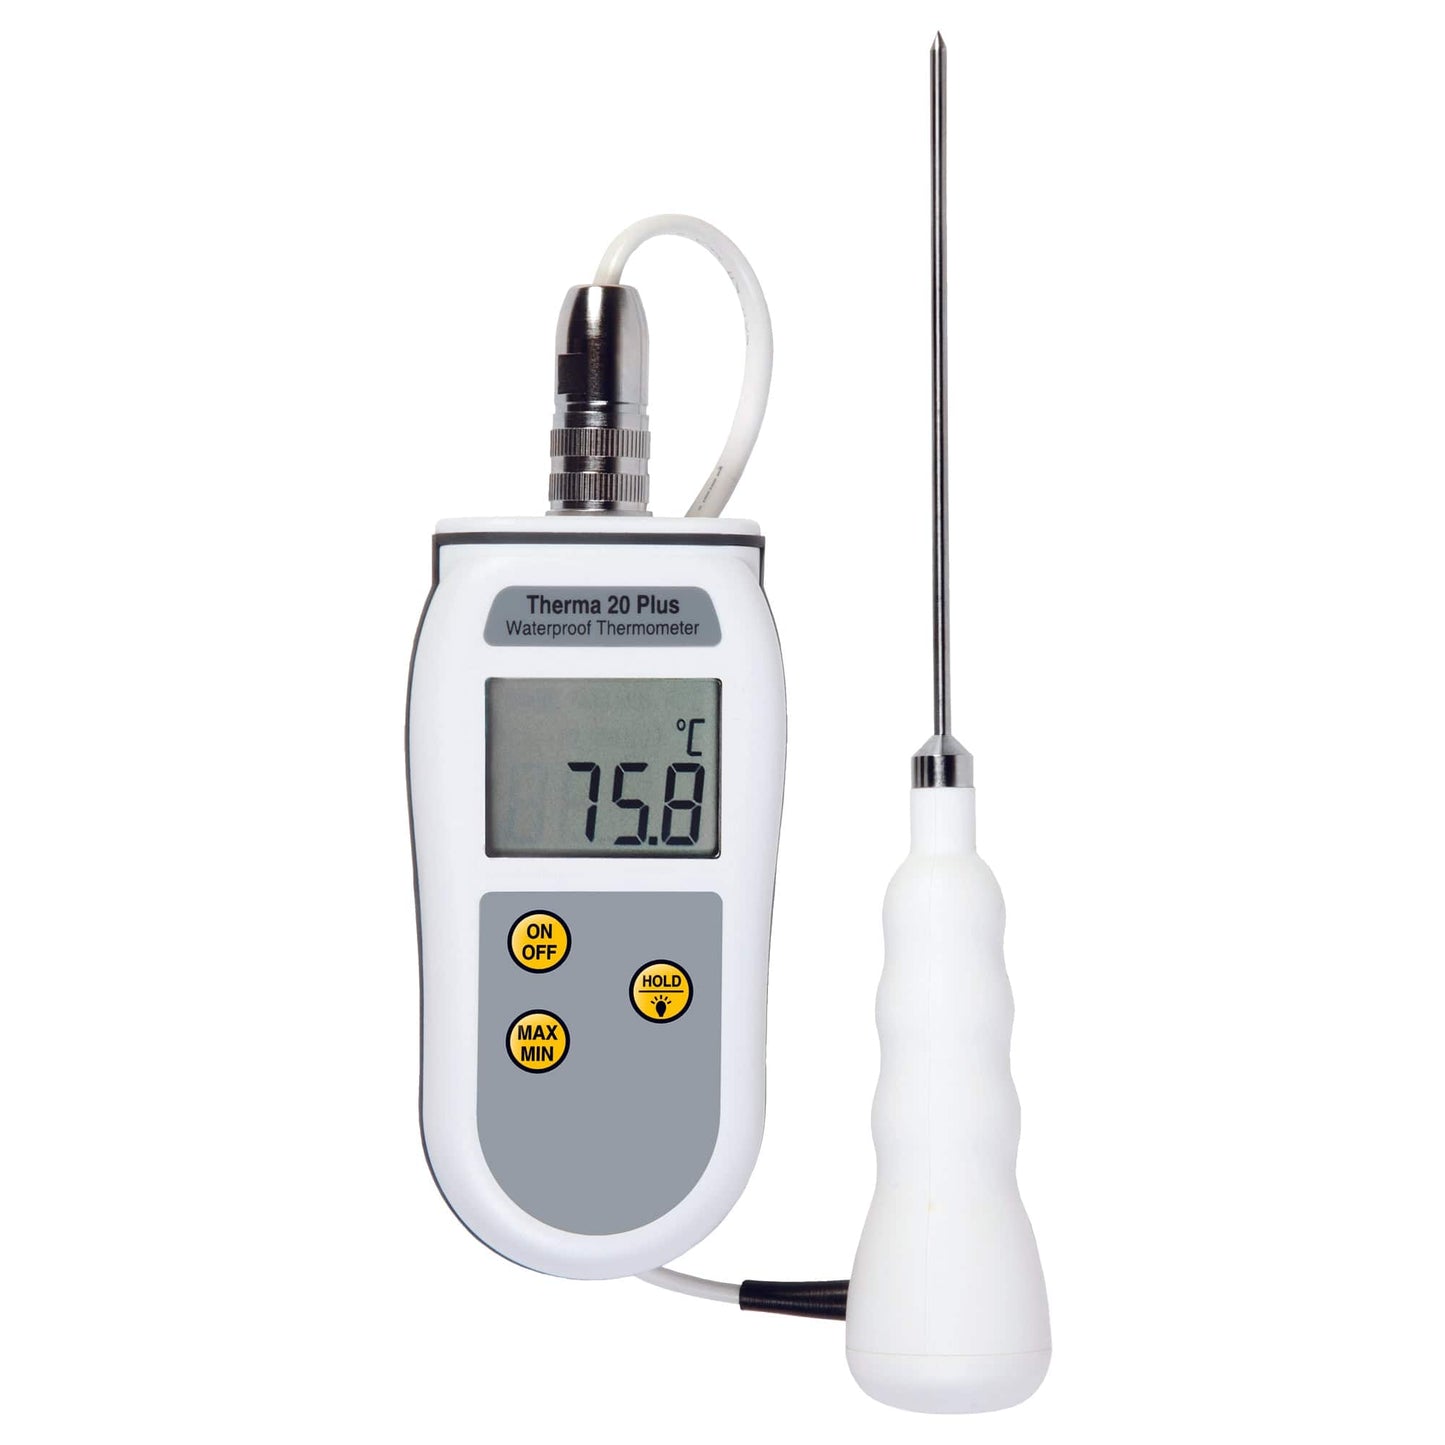 un Thermomètre étanche numérique Therma 20 Plus pour la transformation des aliments avec un thermomètre attaché.